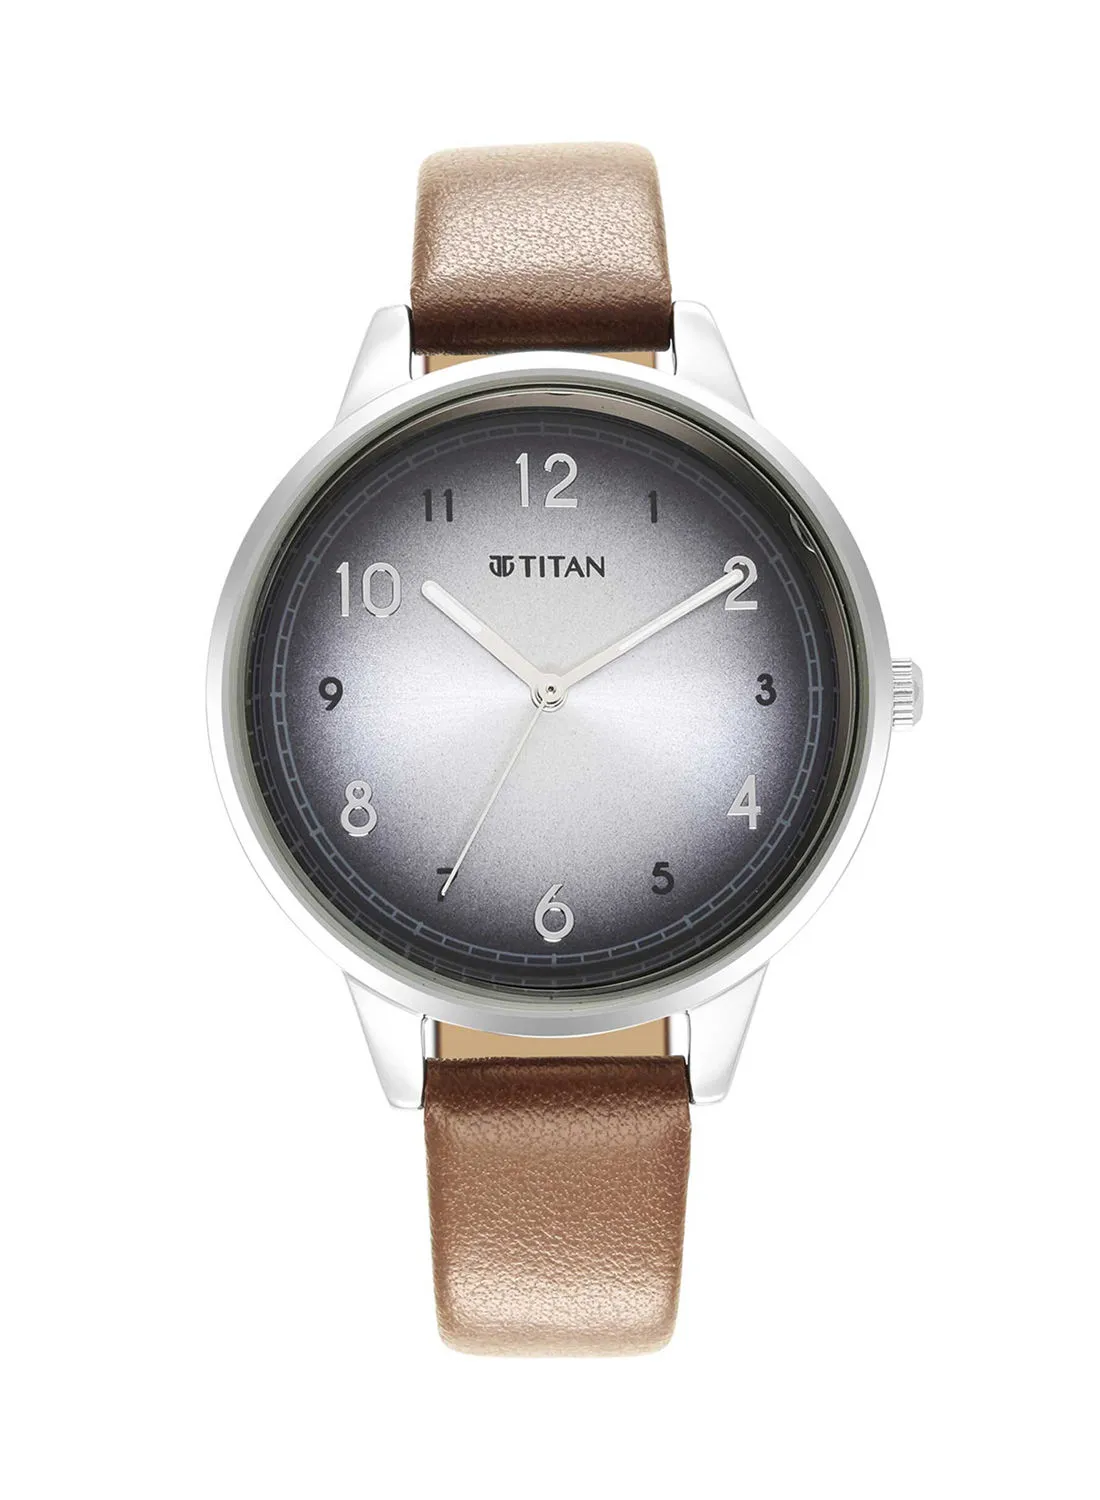 TITAN Women's Leather Analog Wrist Watch 2648SL04